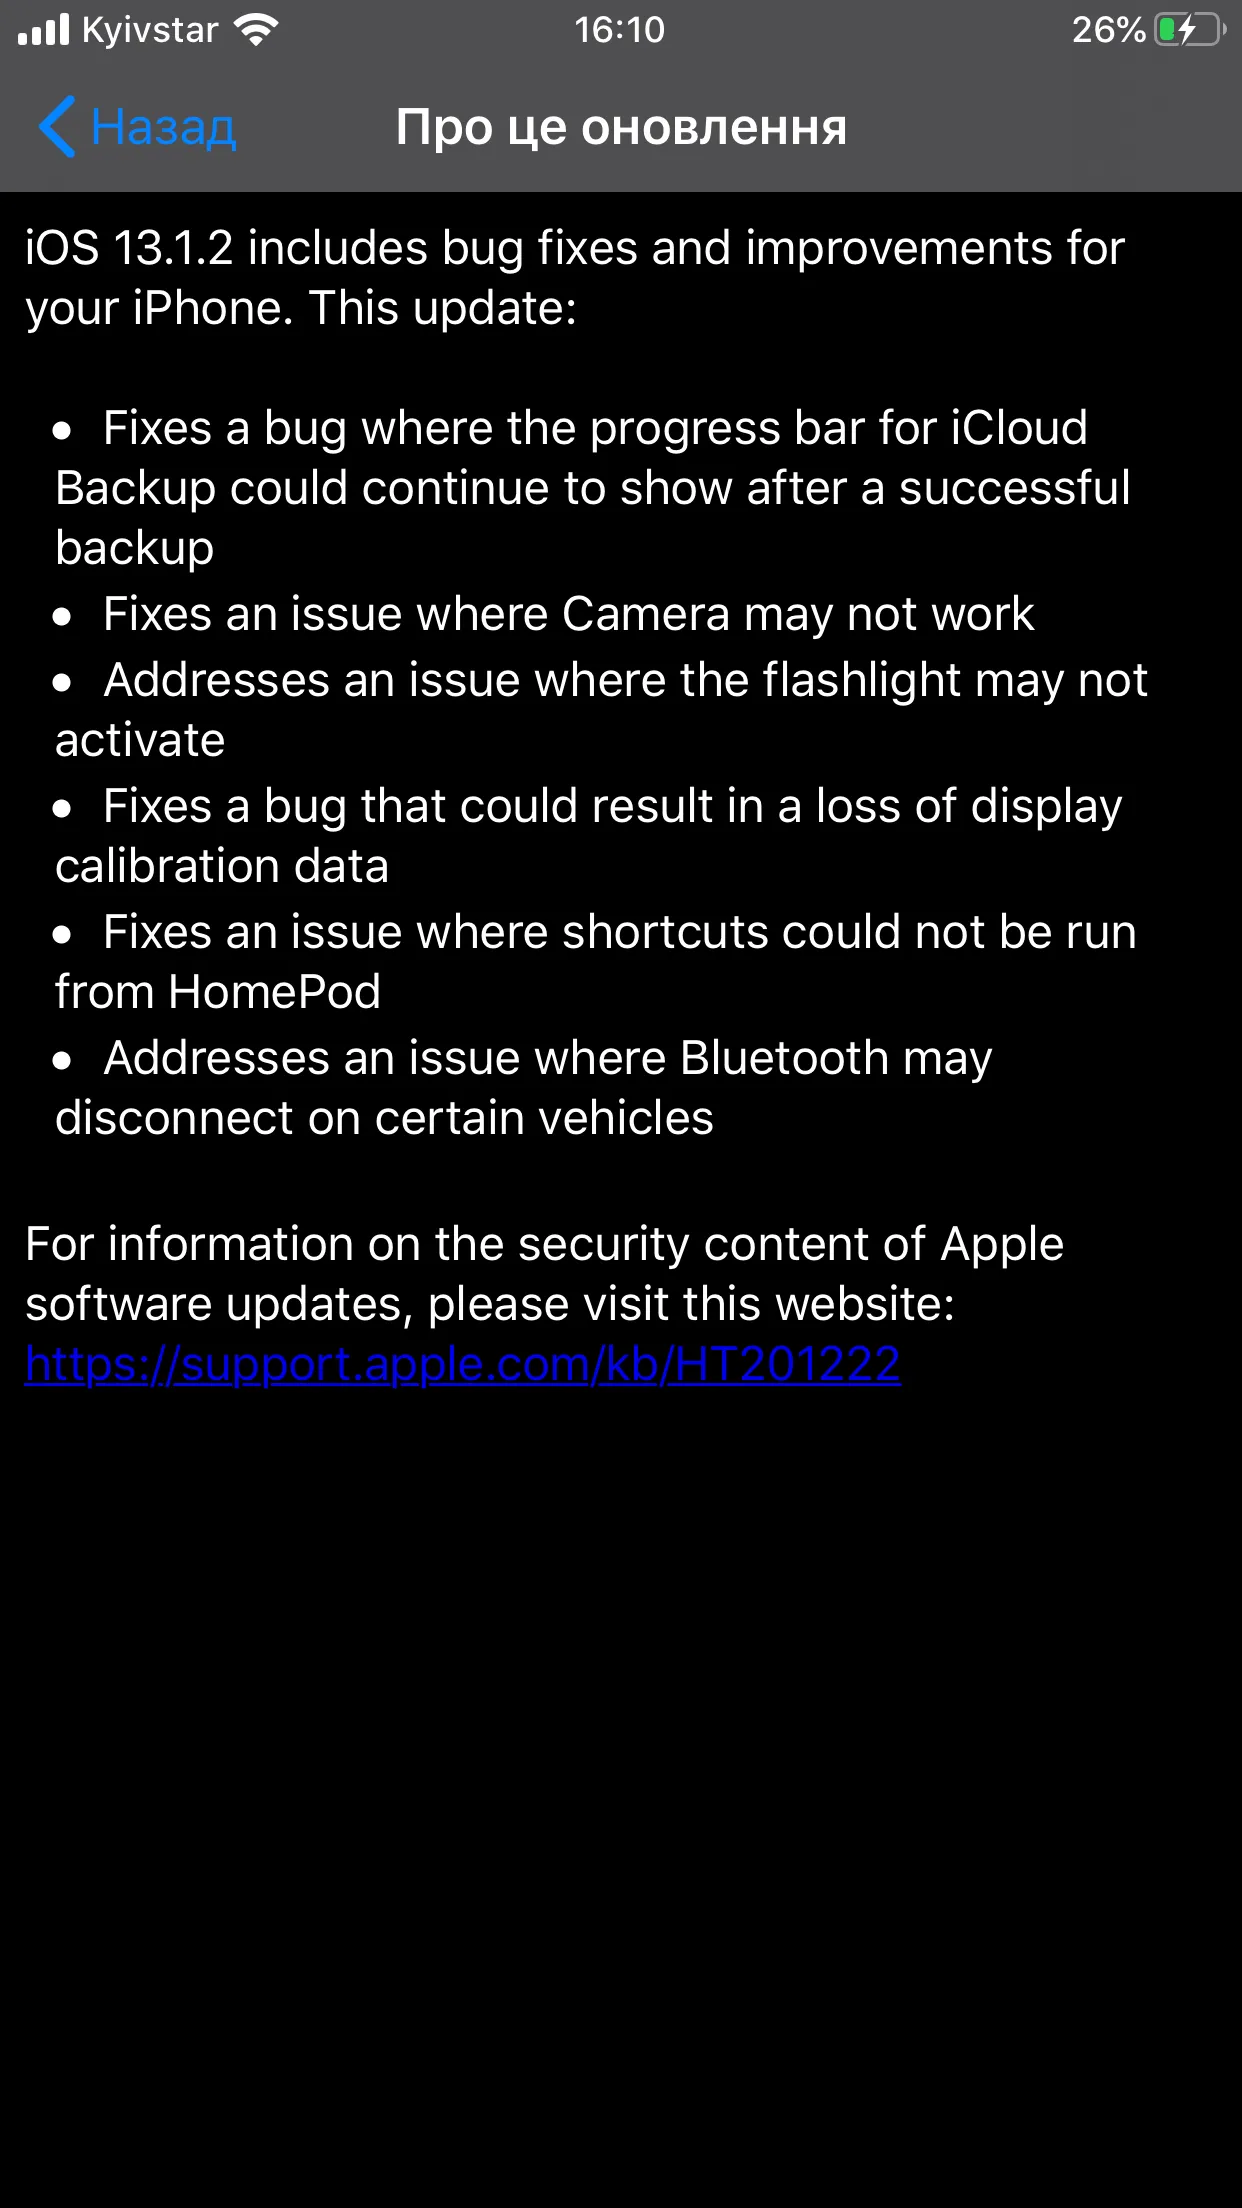 Що виправили у iOS 13.1.2